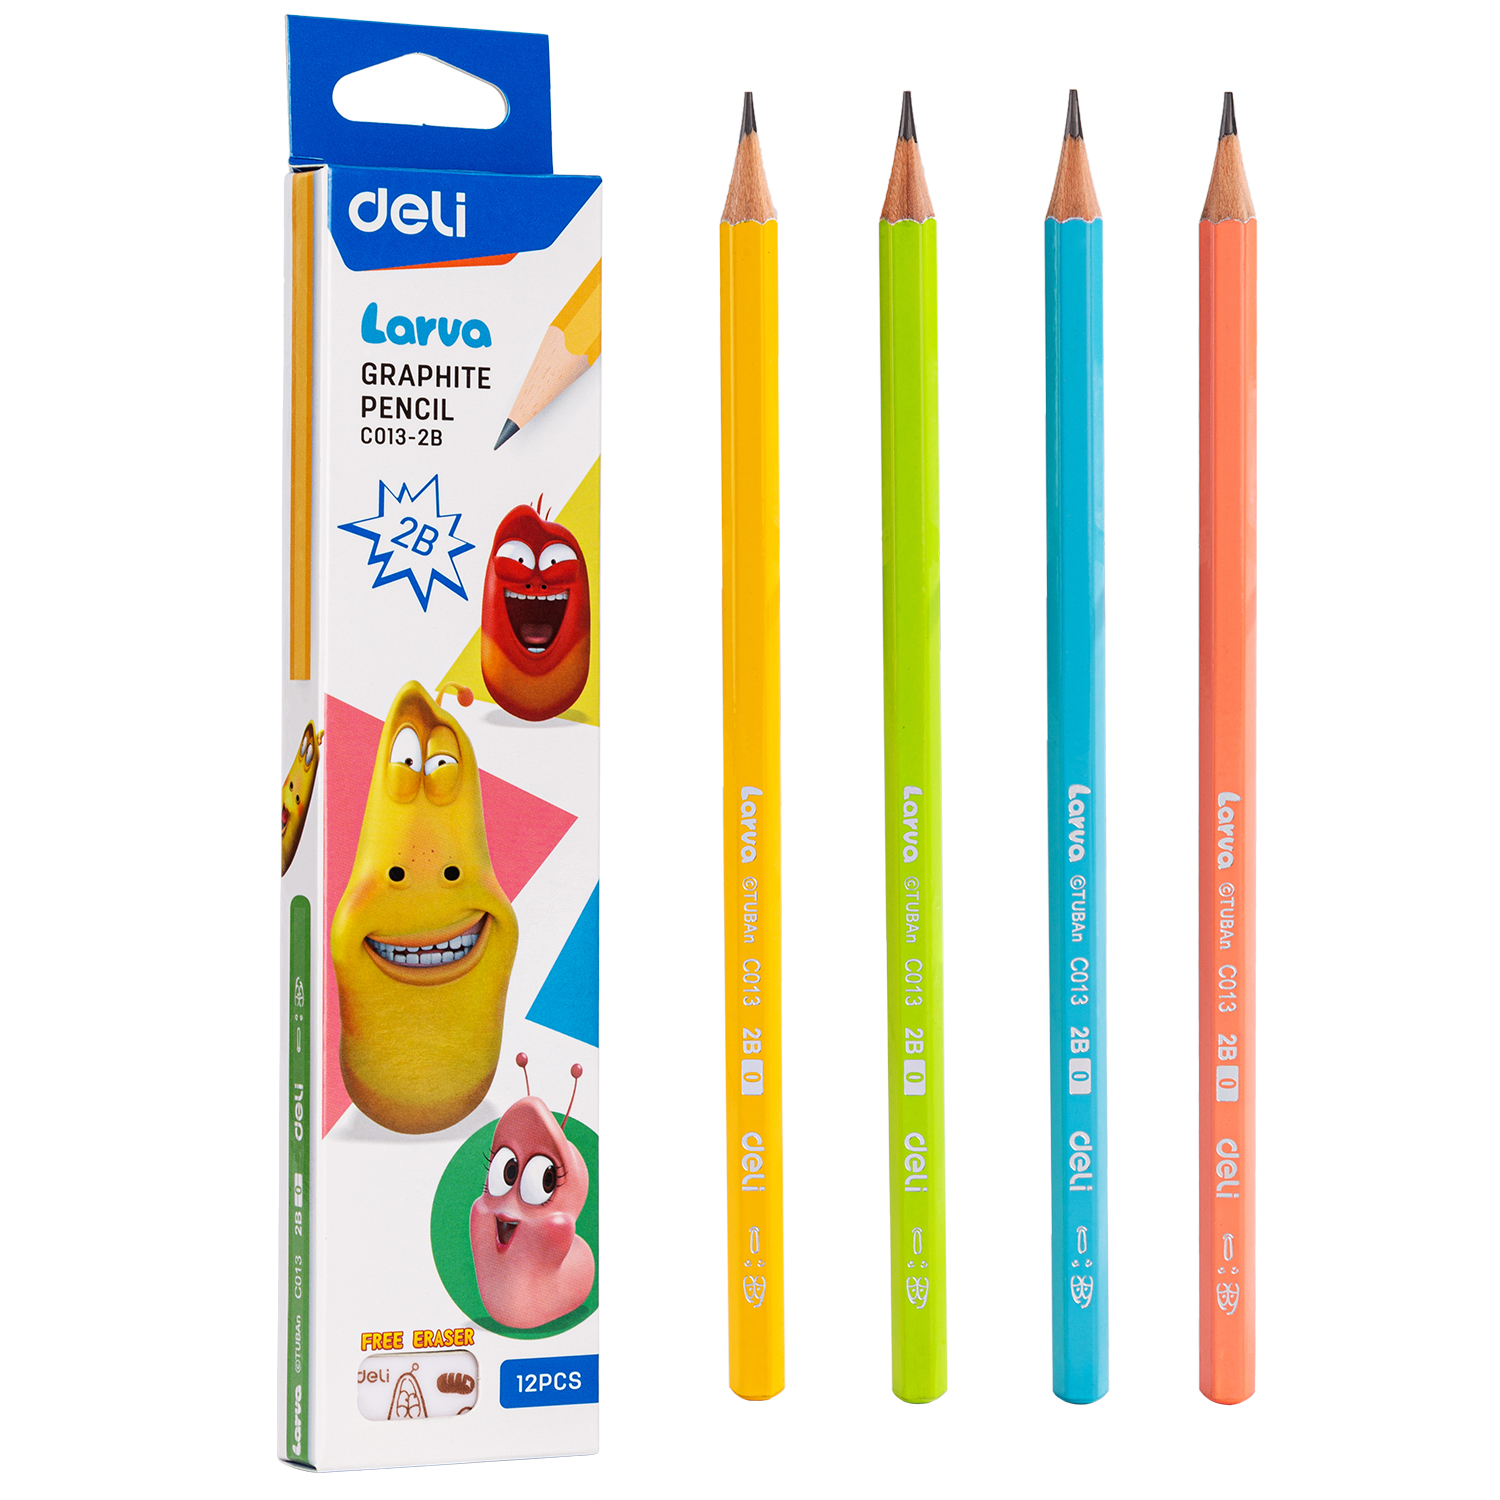 Deli-EC013-2B Graphite Pencil